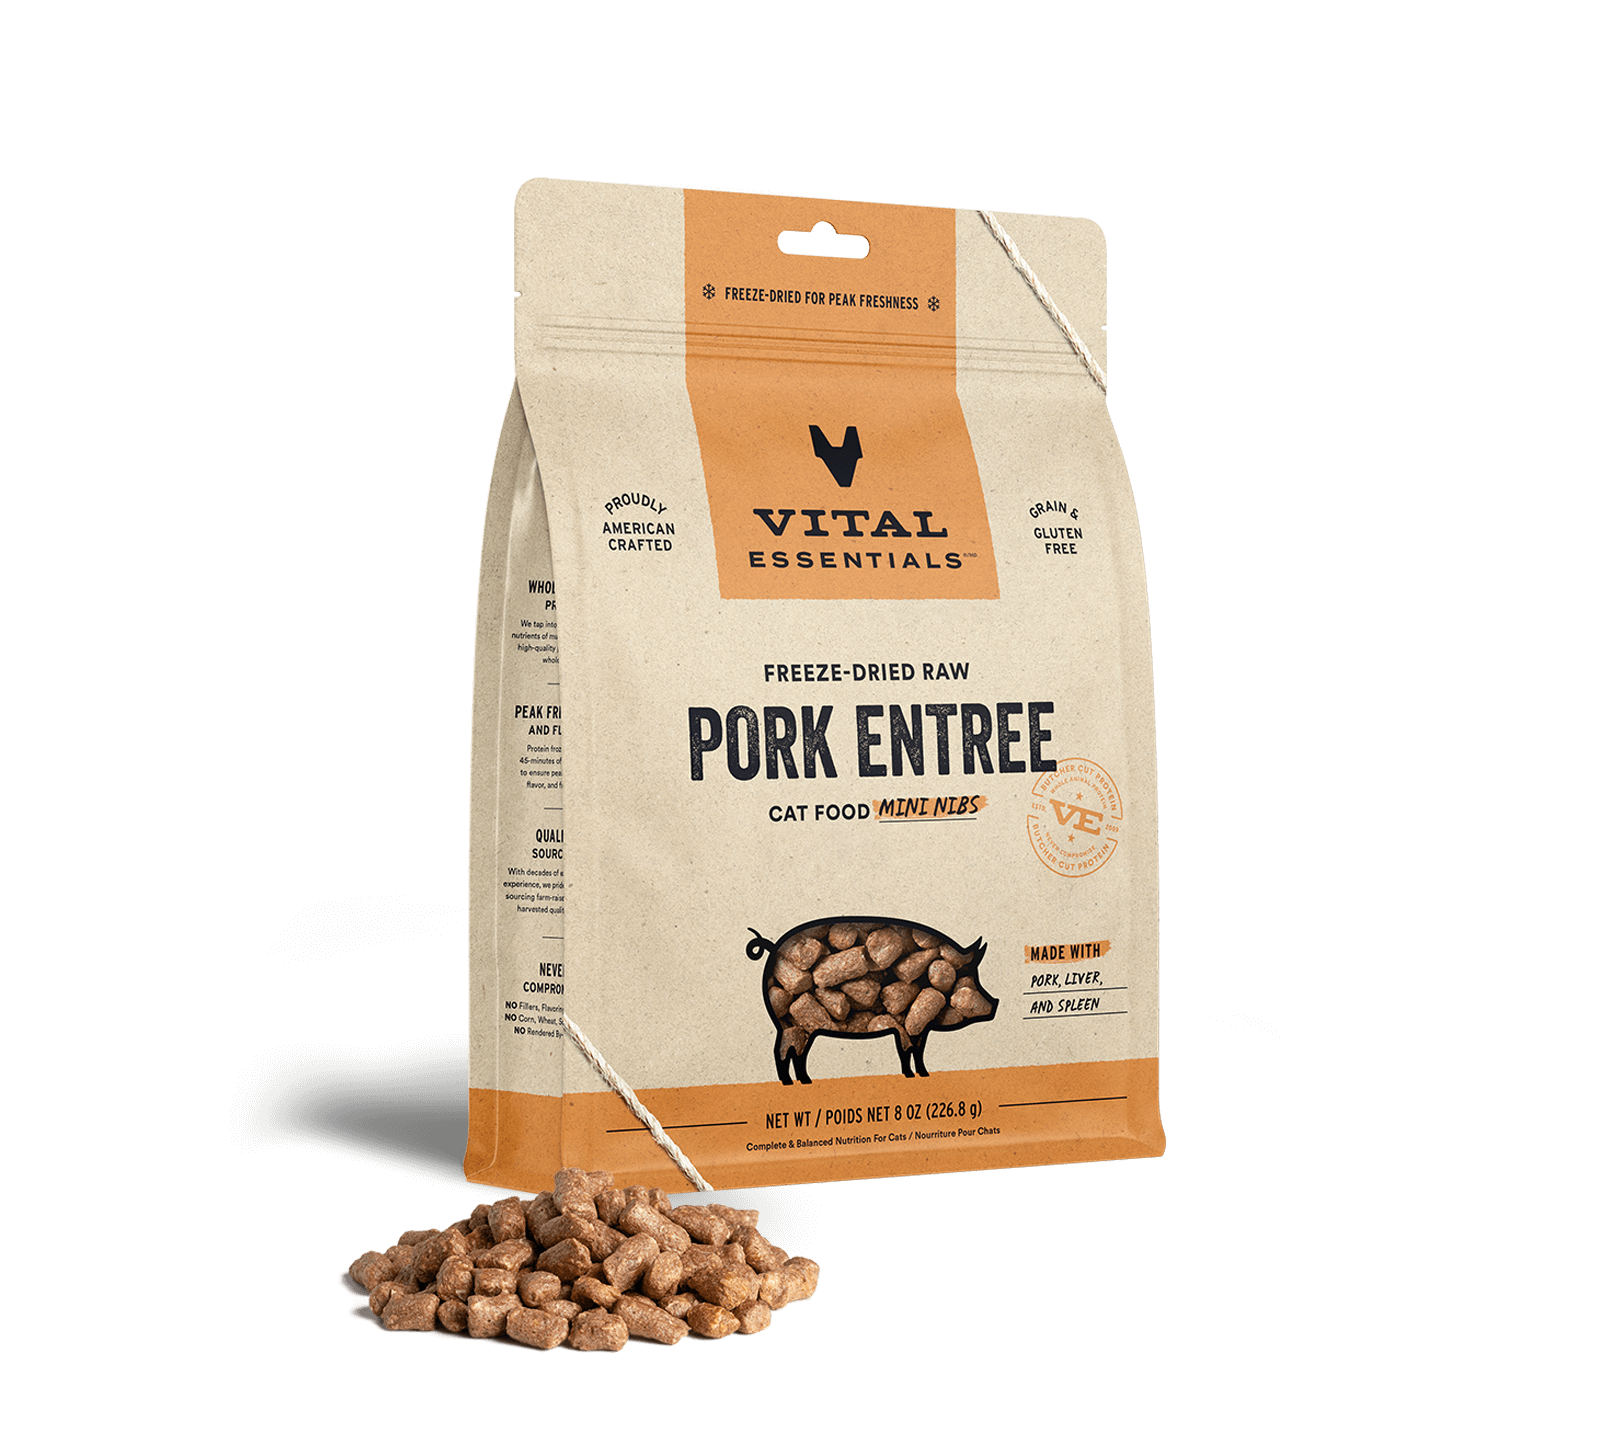 Vital Essentials Freeze-Dried Raw Pork Entree Cat Food Mini Nibs, 8 oz - Food